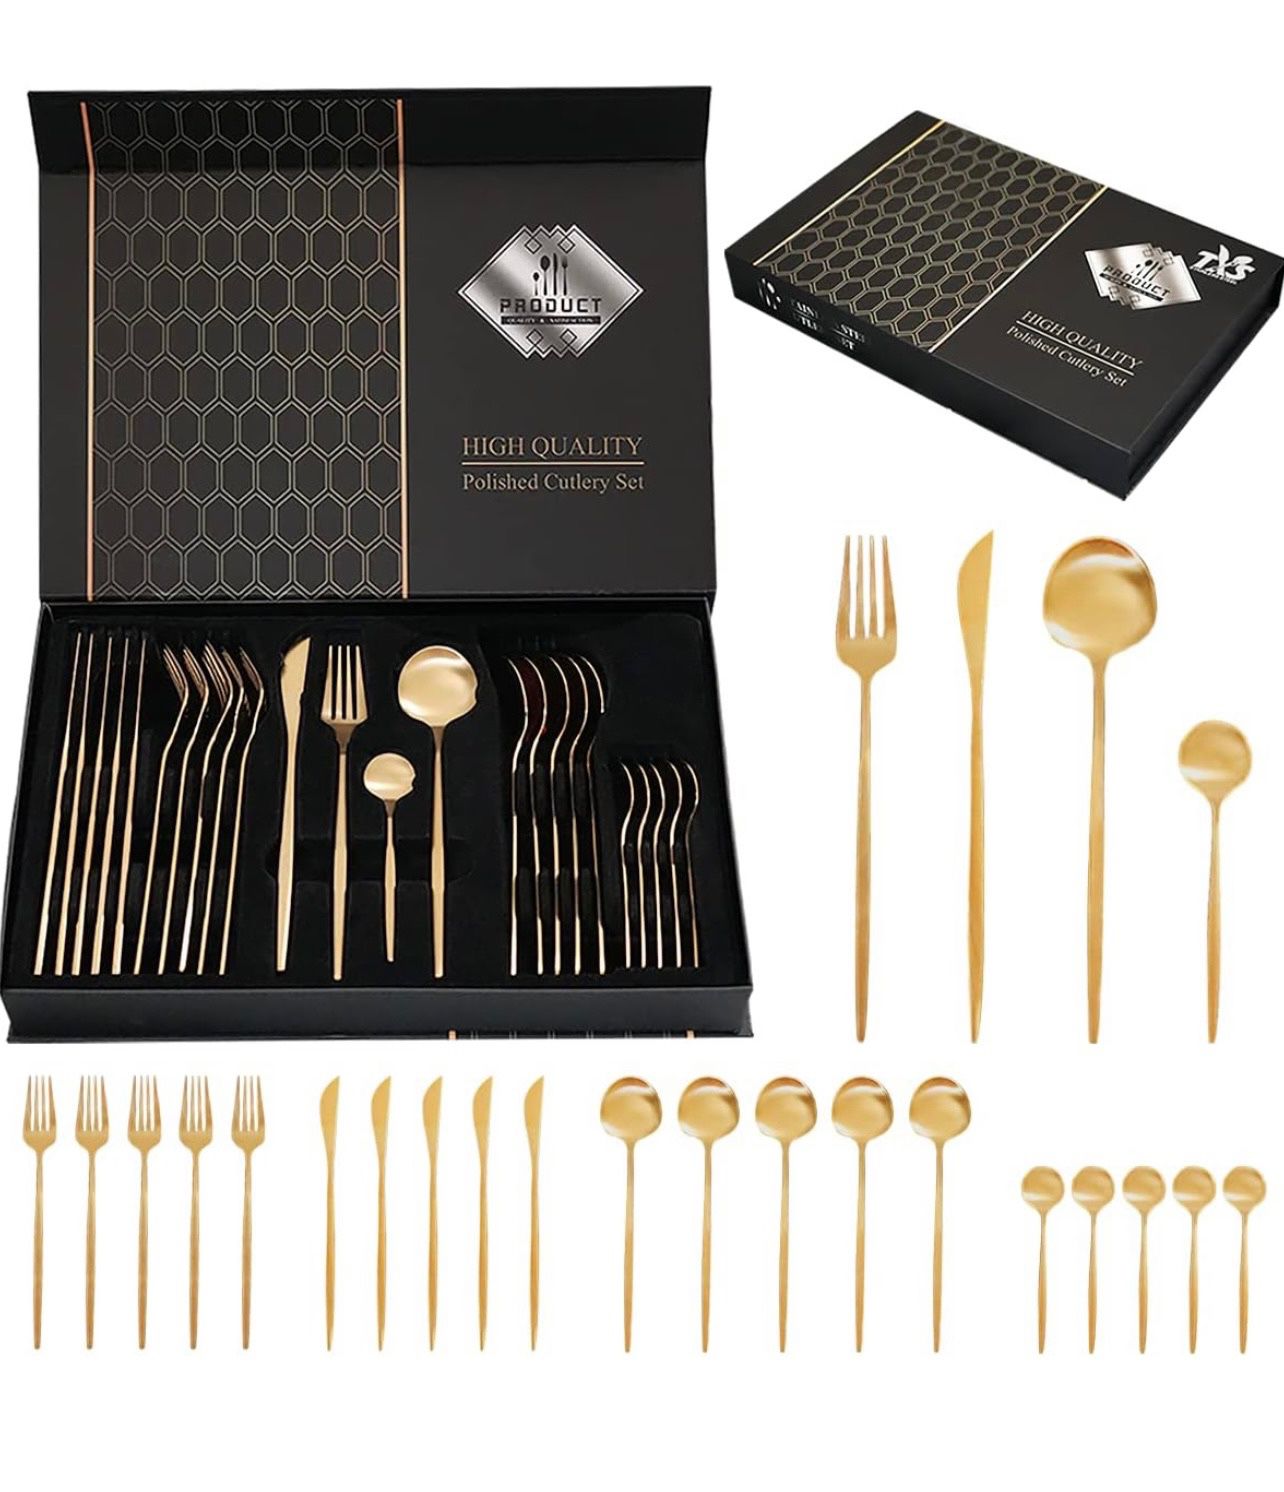 24pcs utensils set - Spoon, Fork, Knife - Stainless Steel